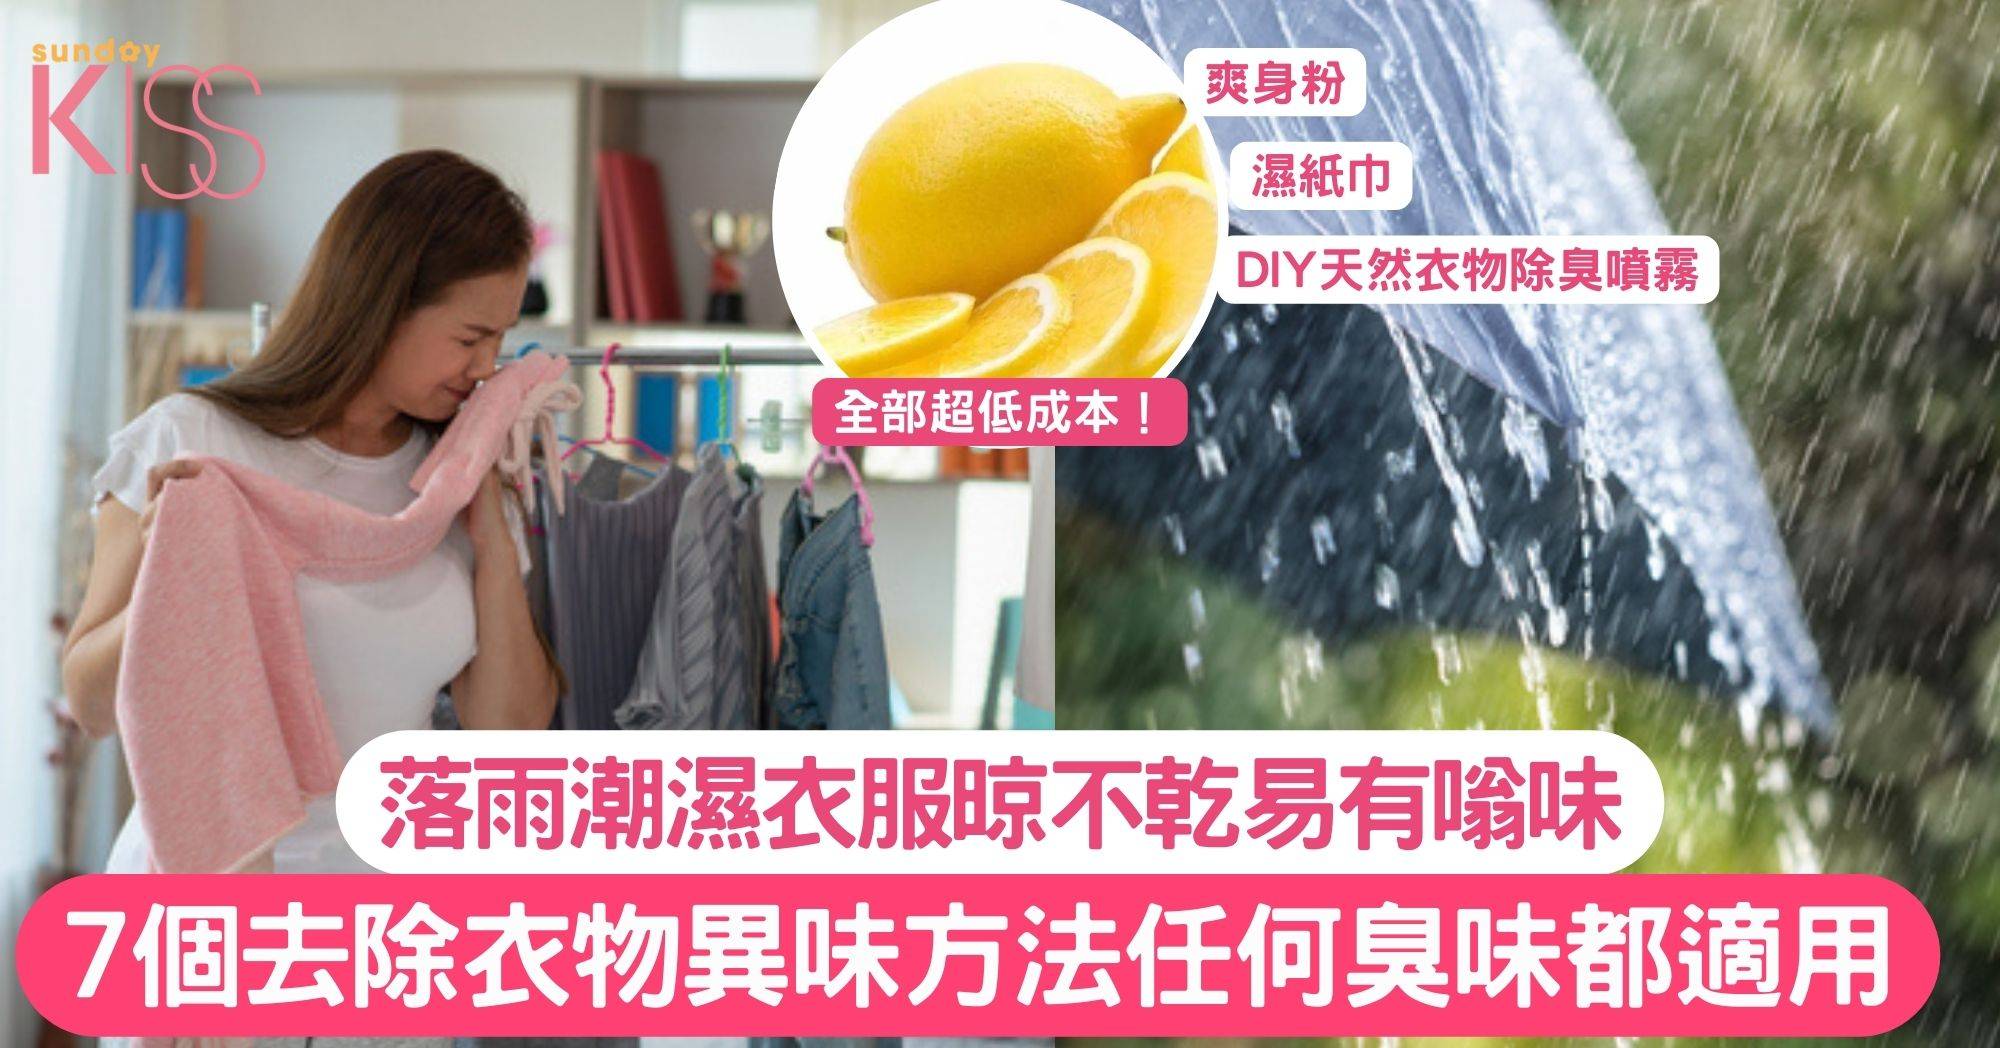 落雨潮濕衣服晾不乾易有嗡味 7個去除衣物異味急救方法